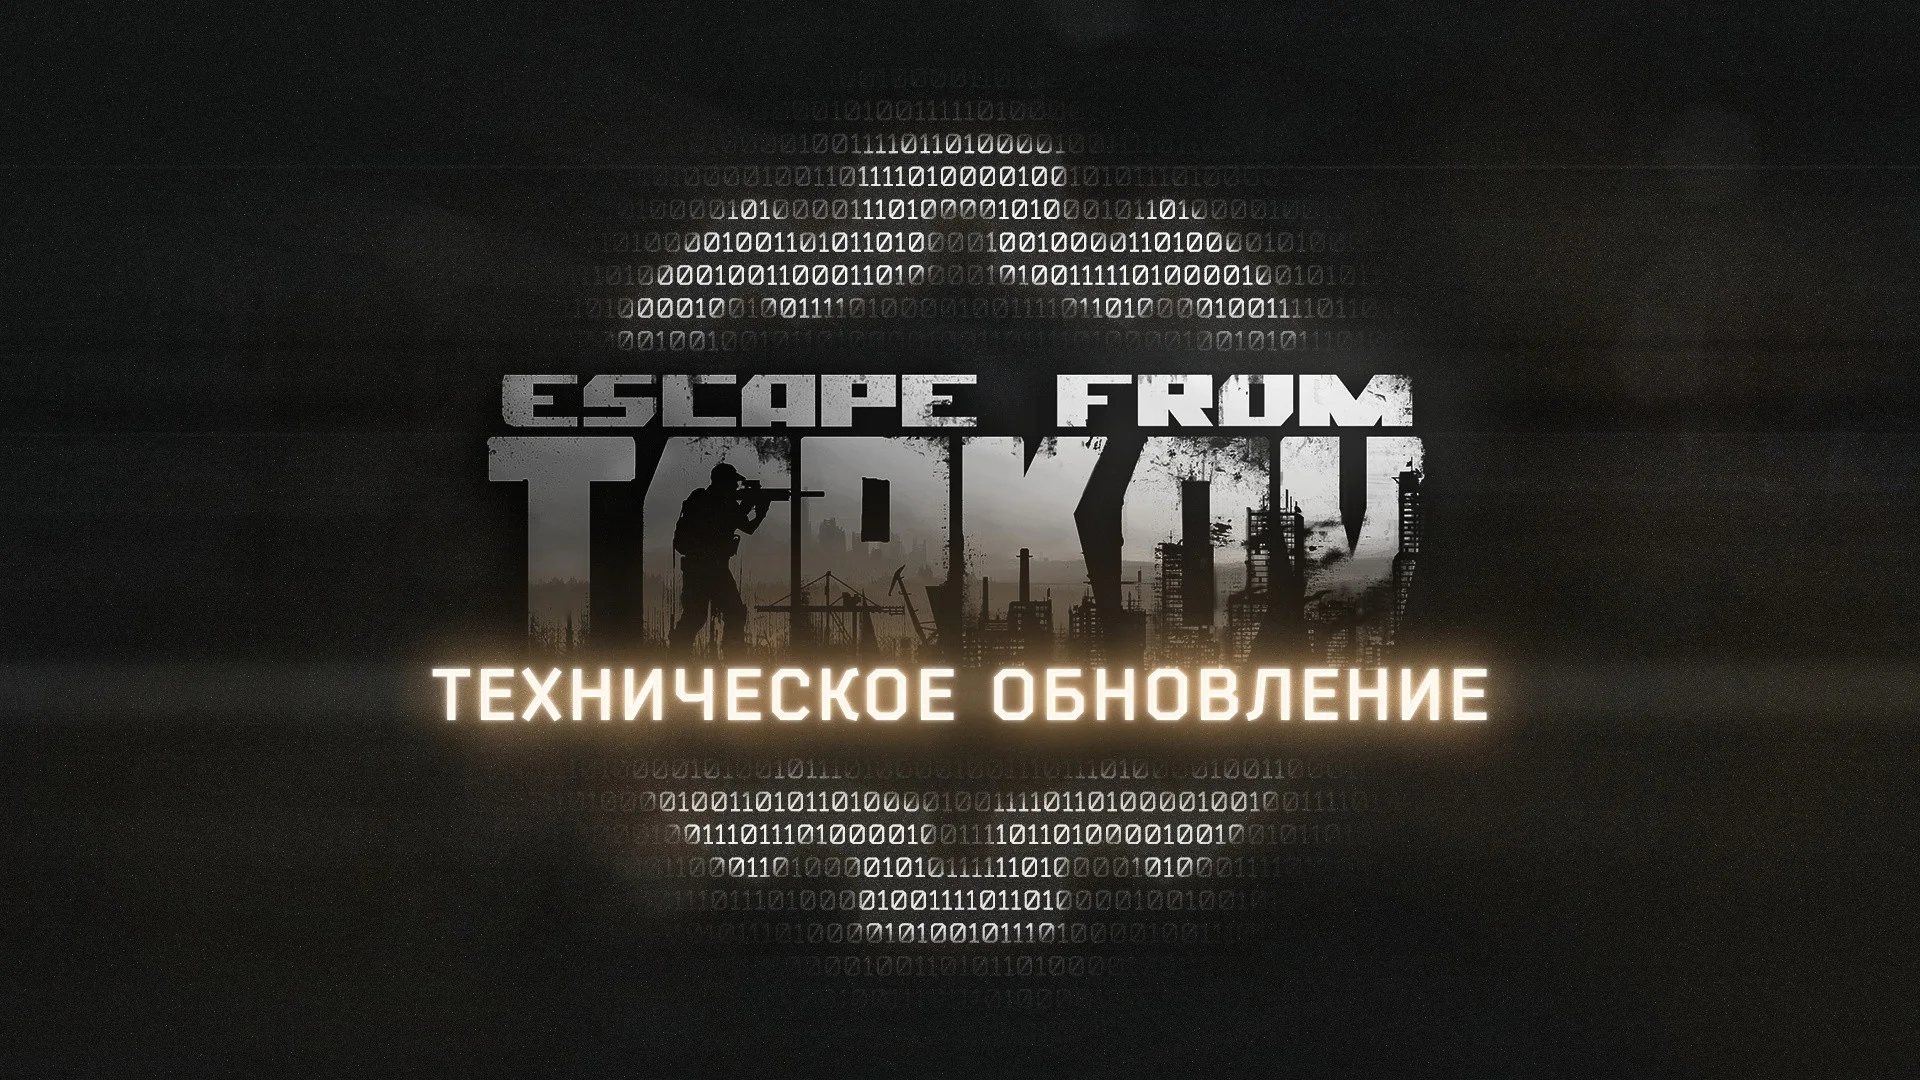 Боты из Escape from Tarkov стали меньше кричать в новом обновлении - фото 1